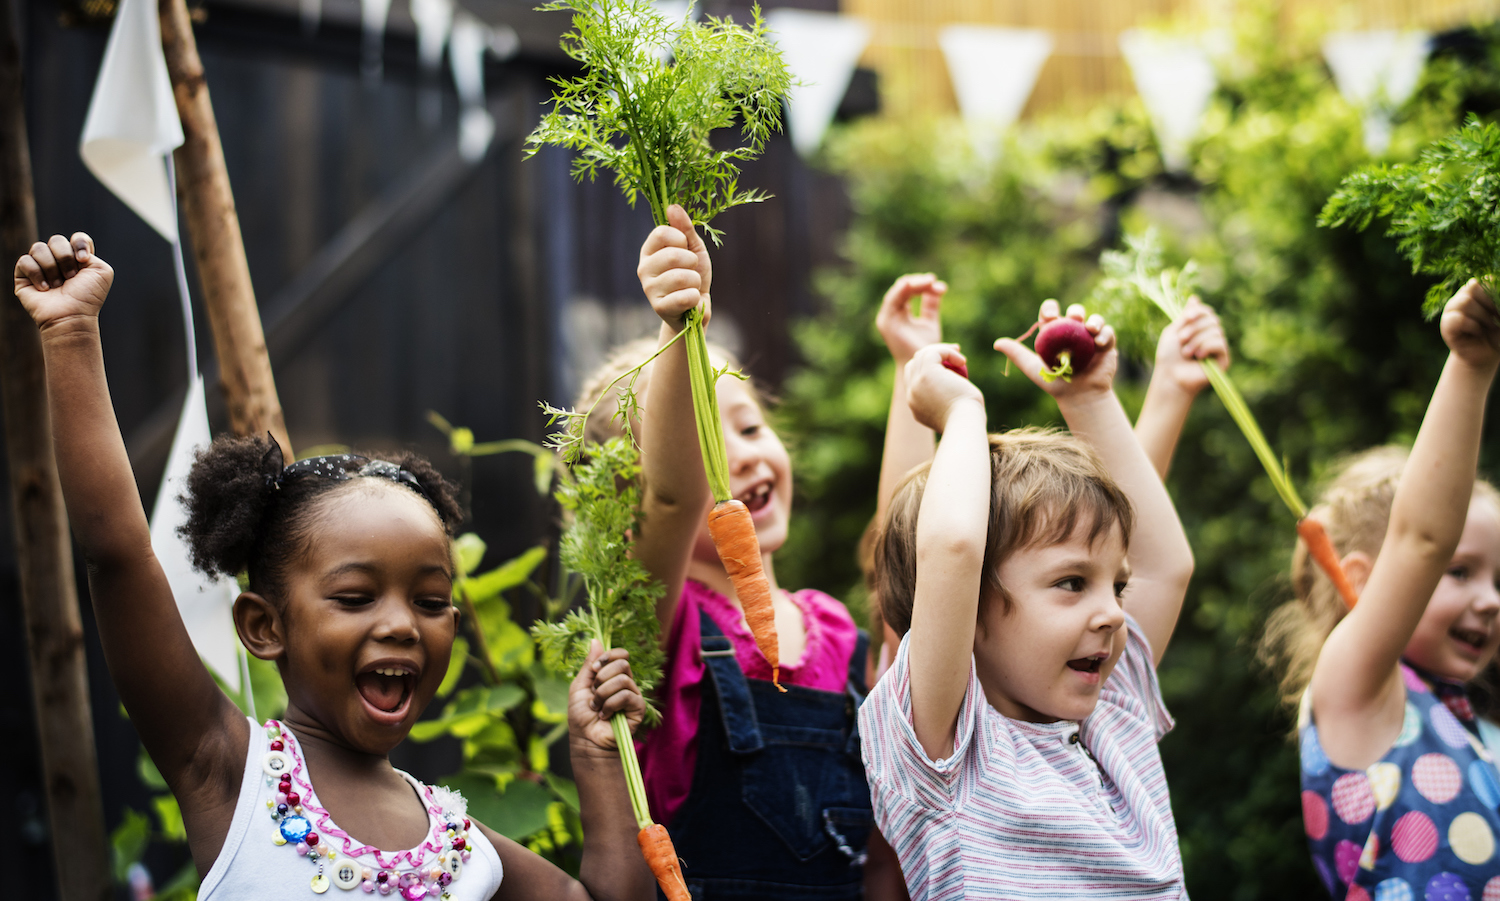 加州州长加文•纽森宣布了一项预算,提出8000万美元的学校食品项目服务350万多名儿童